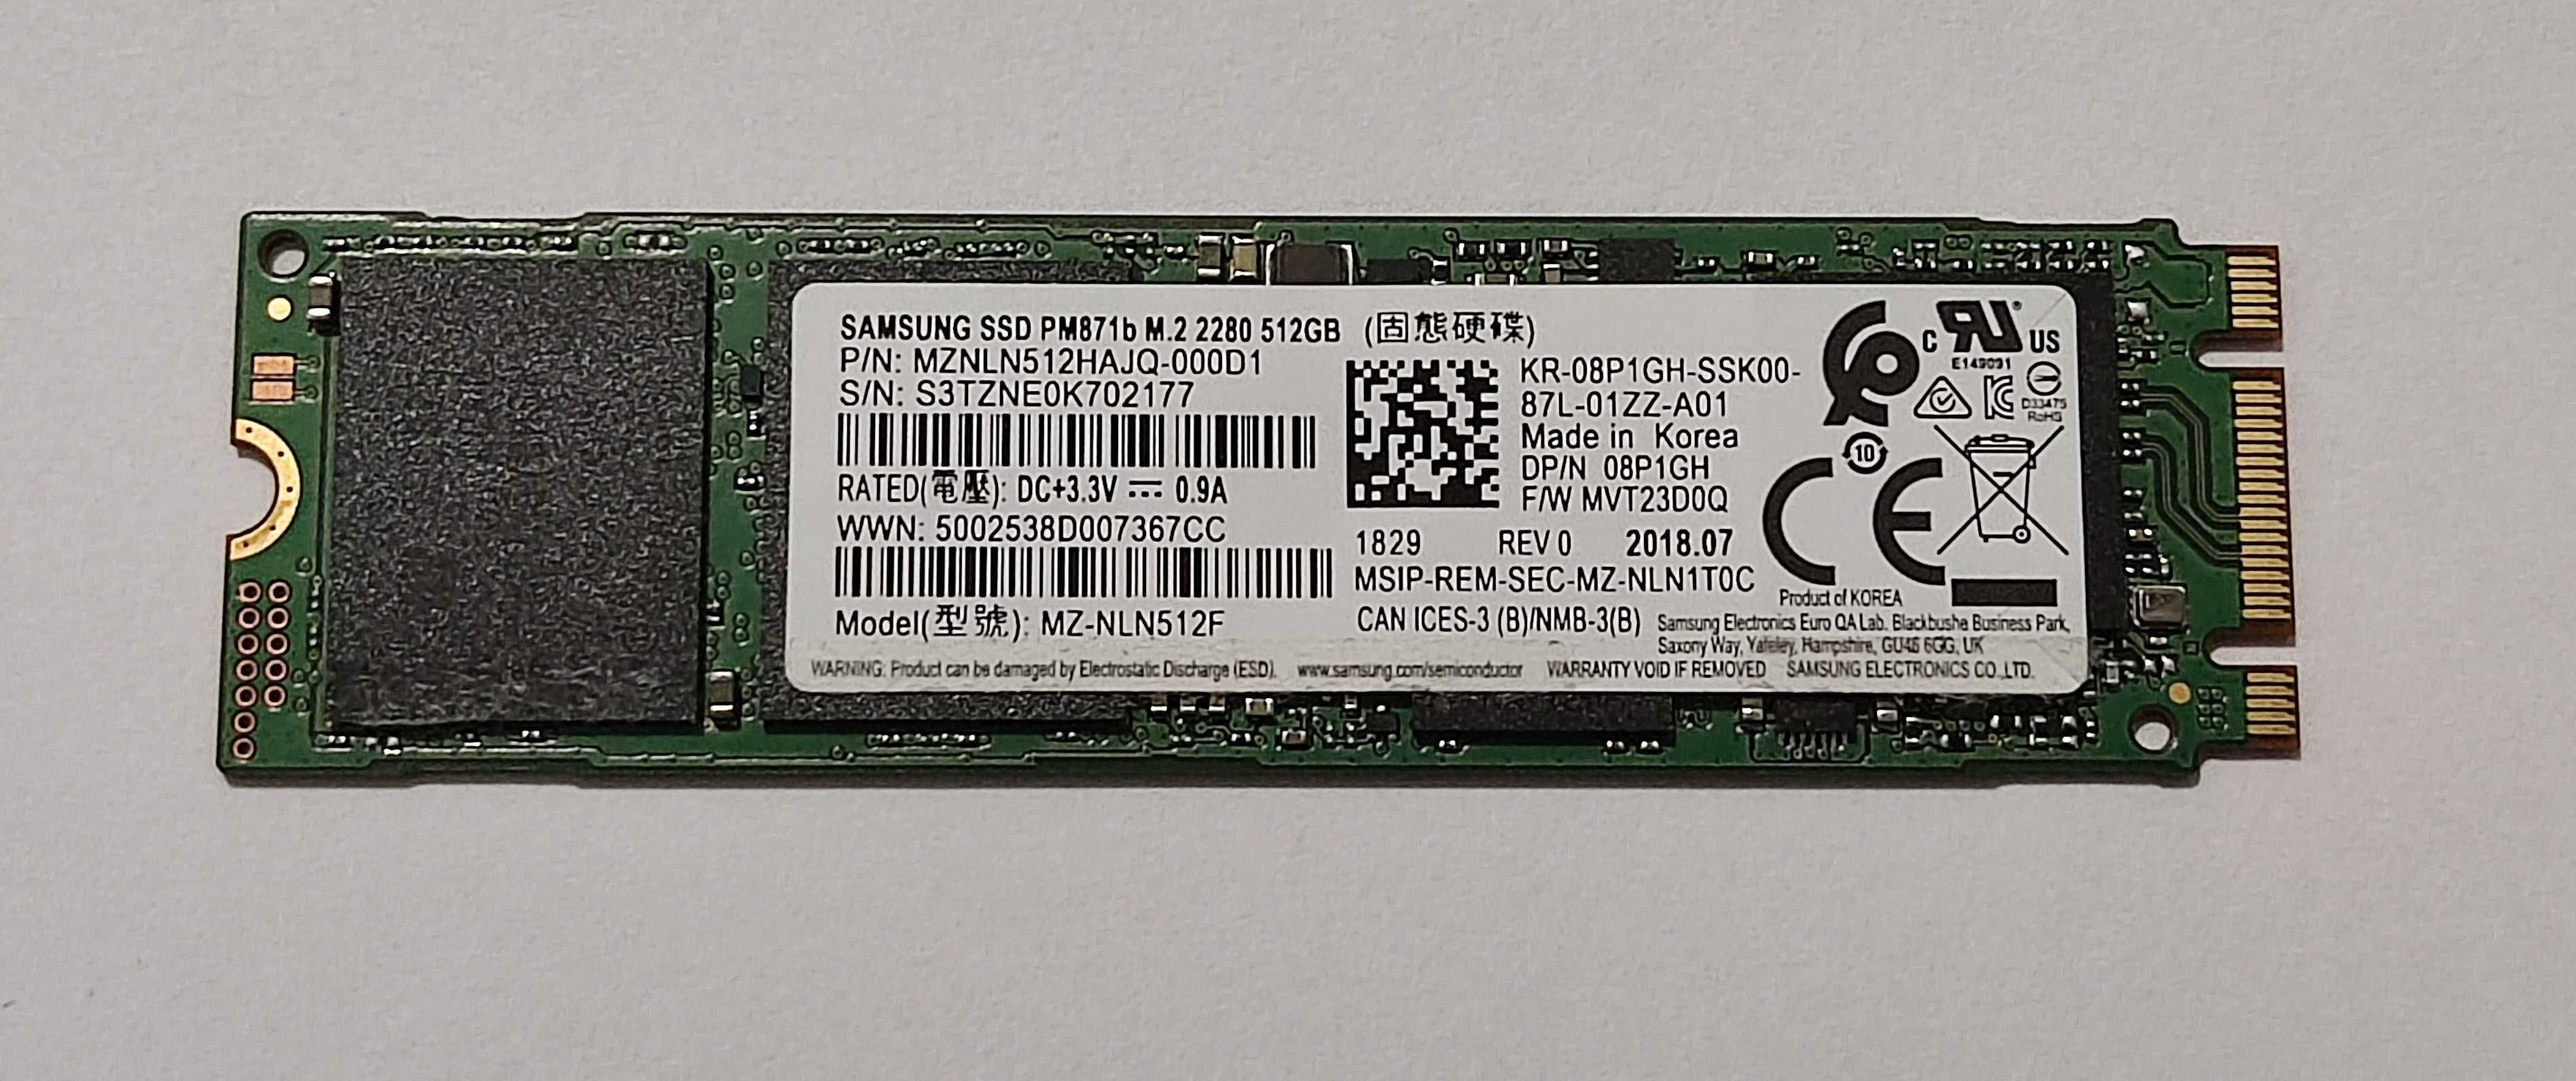 Dysk SSD Samsung PM871, M2 SATA3 512GB - 2280